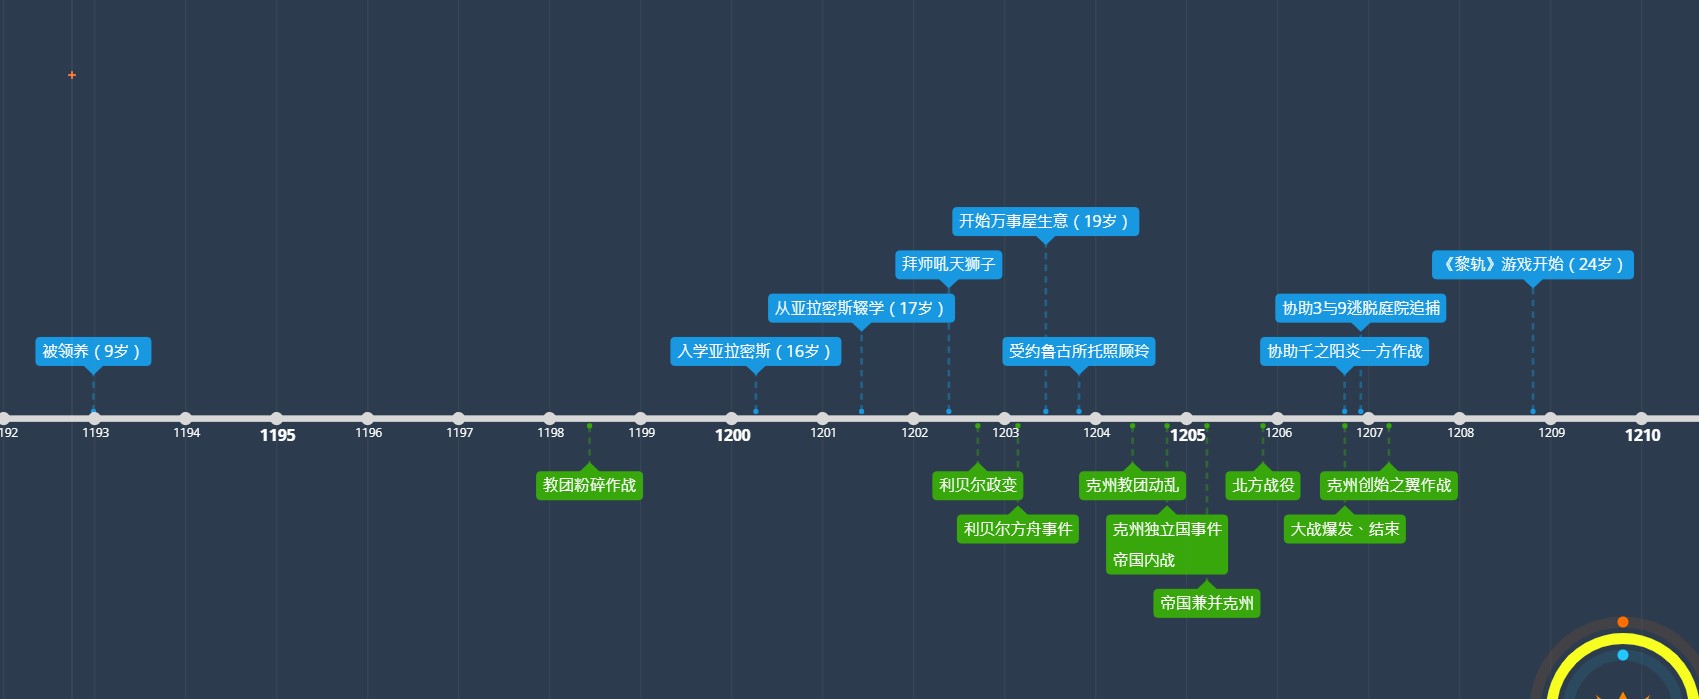 上方的藍色方格為範恩的時間線，下方則《軌跡》系列中歷史大事的時間線